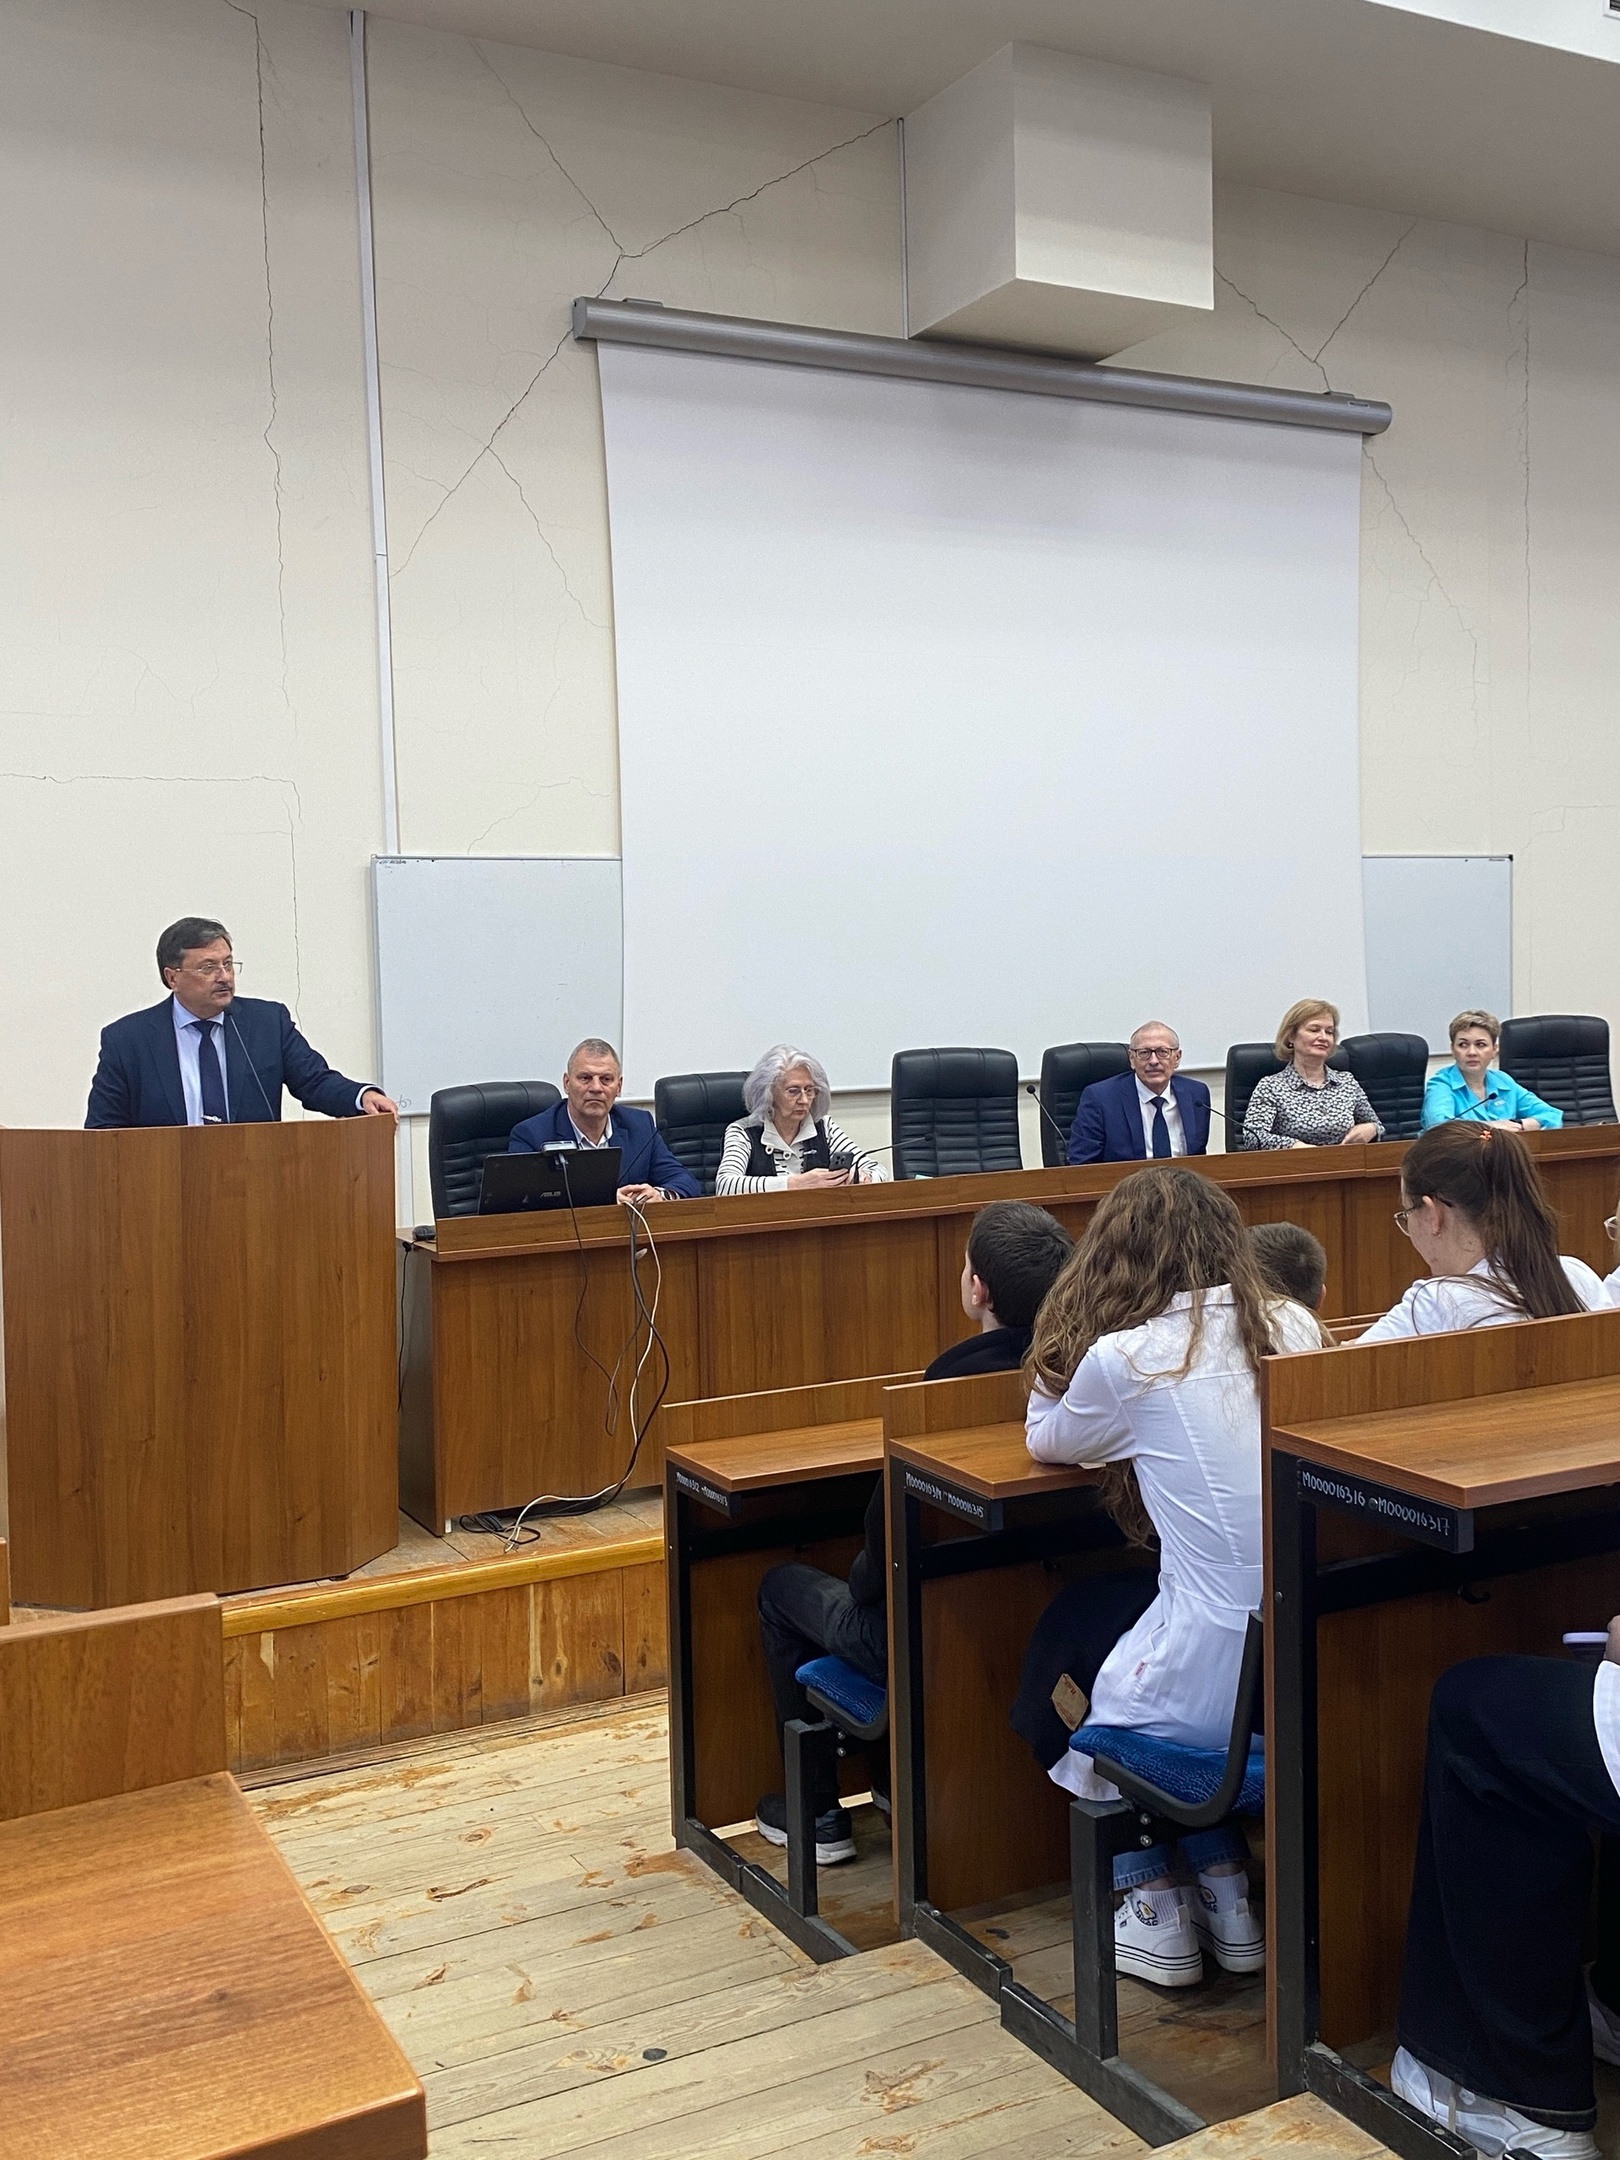  изображение для новости Встреча студентов с ректором Ульяновского Государственного Университета